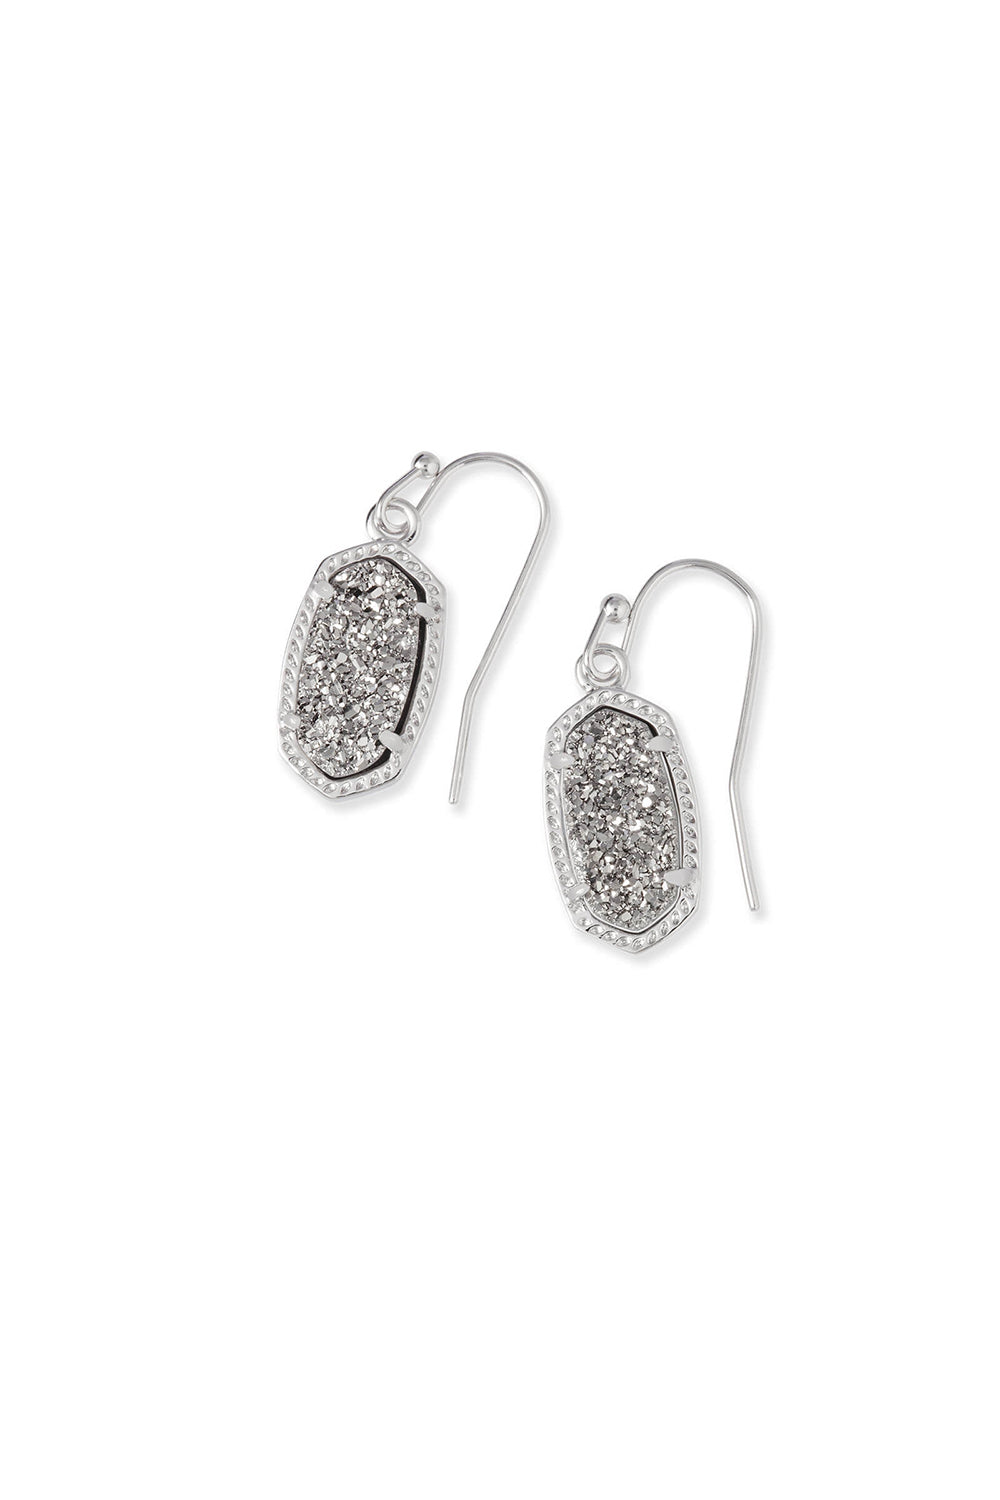 Kendra Scott: Lee Silver Drop Earrings - Platinum Drusy | Makk Fashions